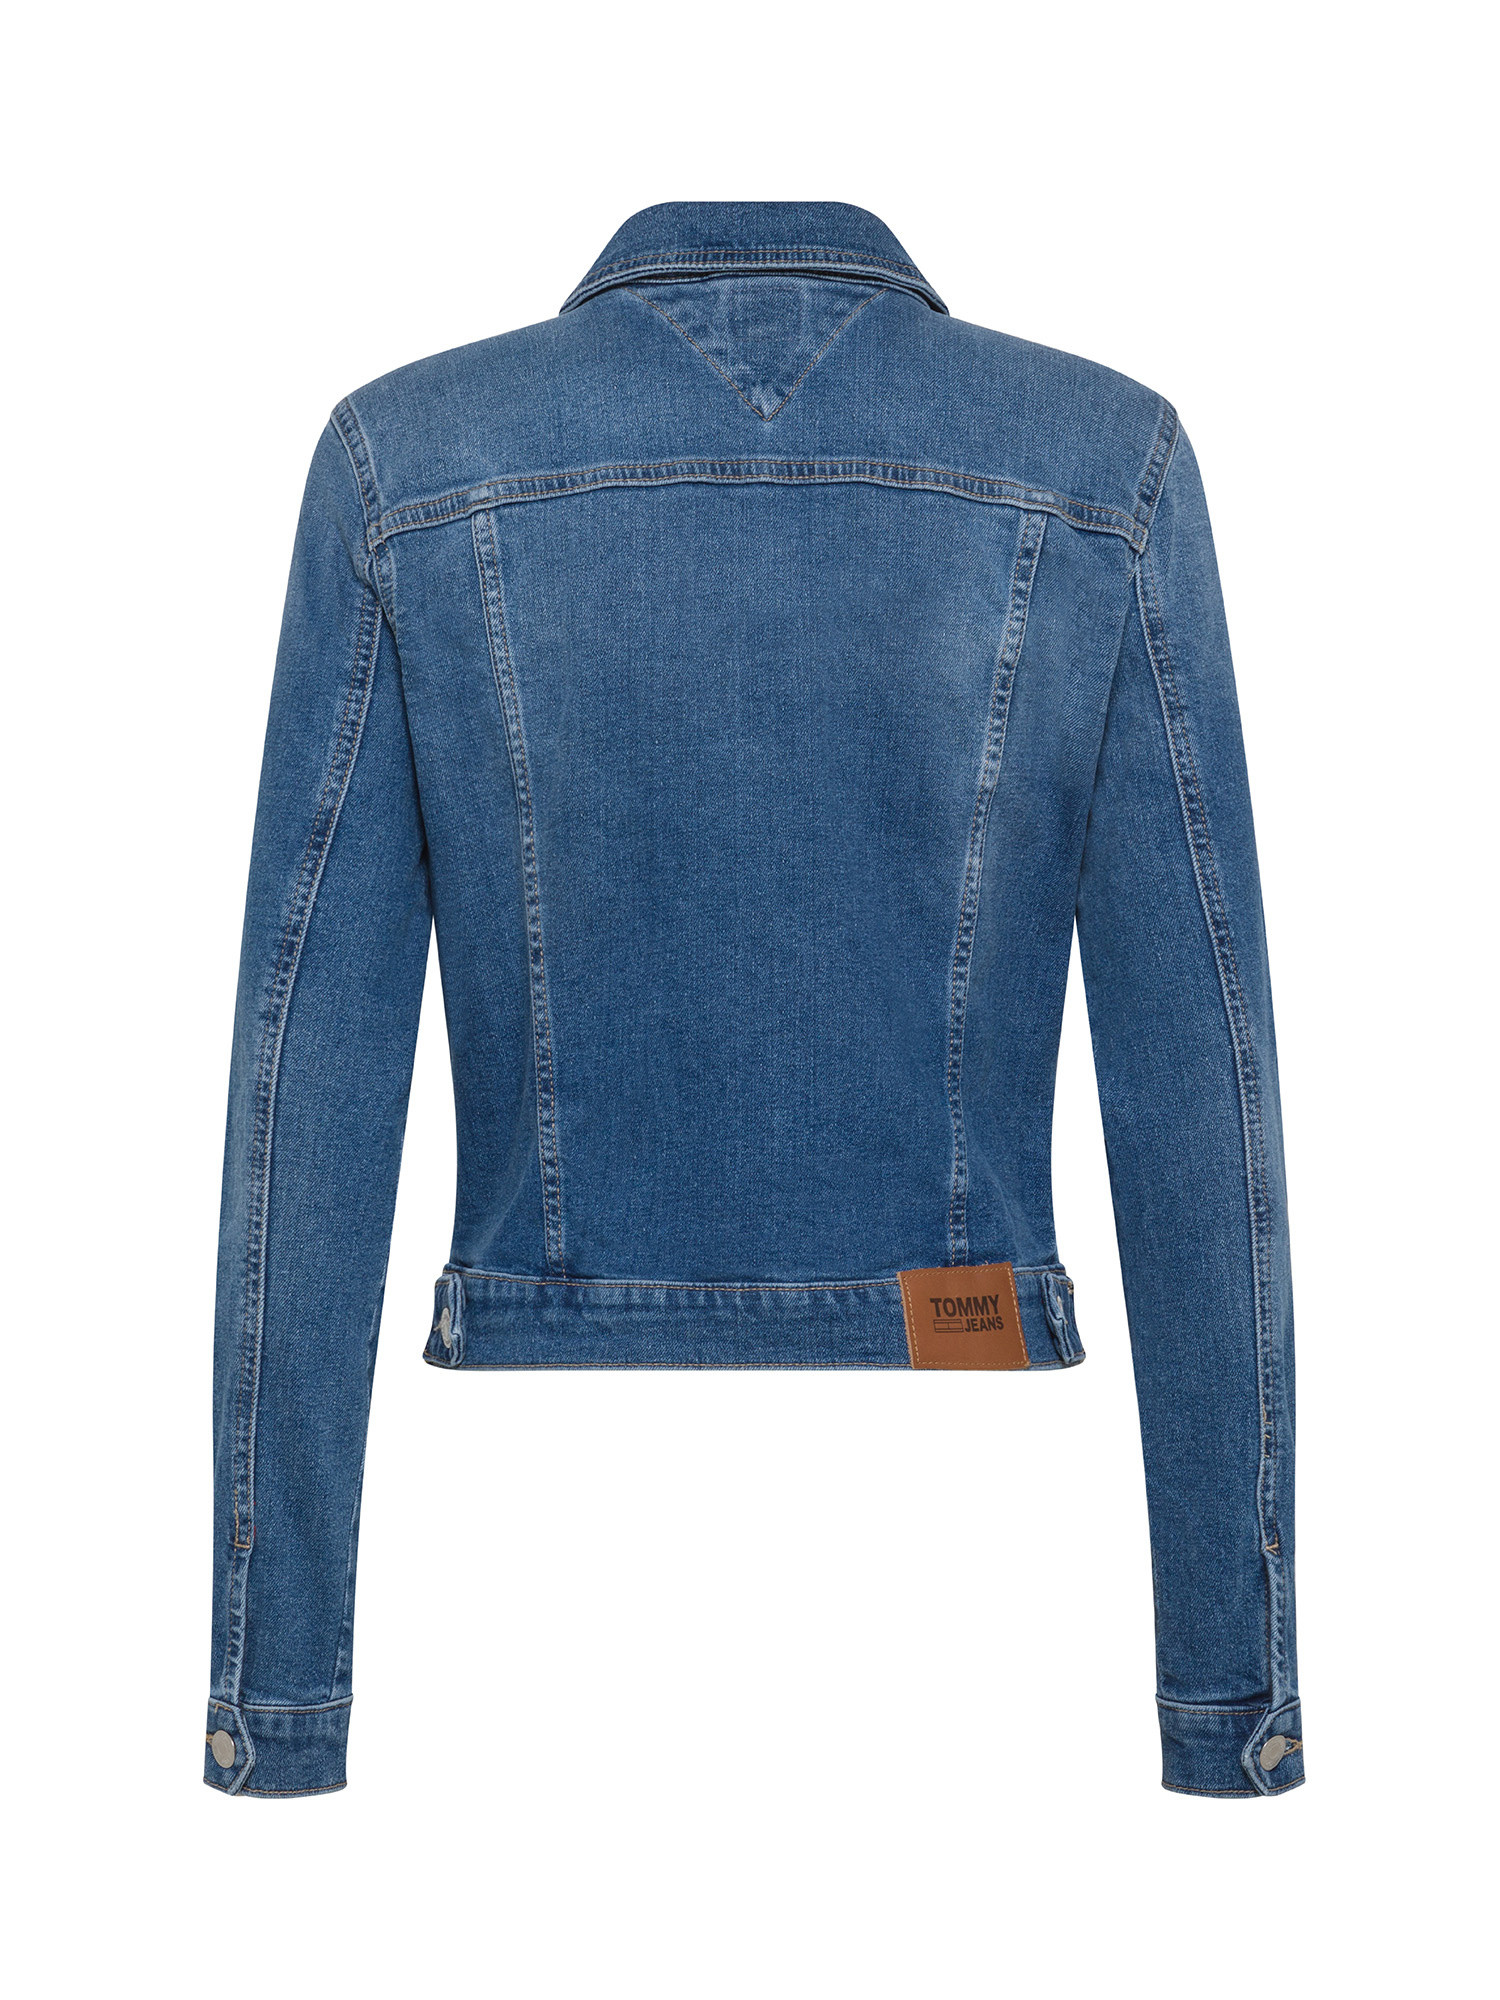 Tommy Jeans - Slim fit denim jacket, Denim, large image number 1